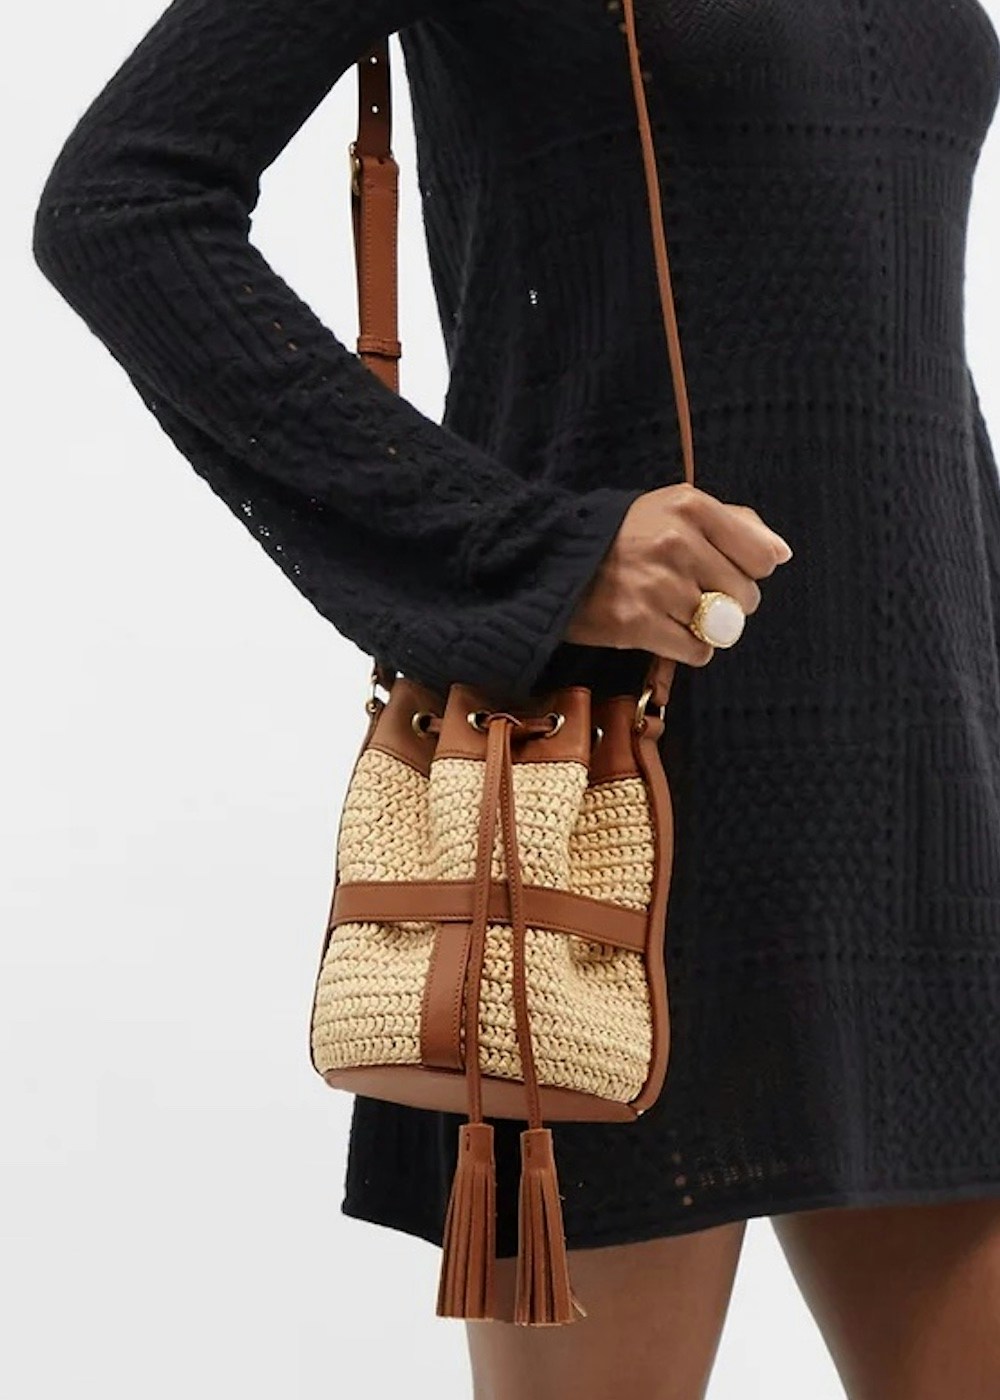 Saint Laurent Seau Leather And Raffia Bucket Bag, £1,375